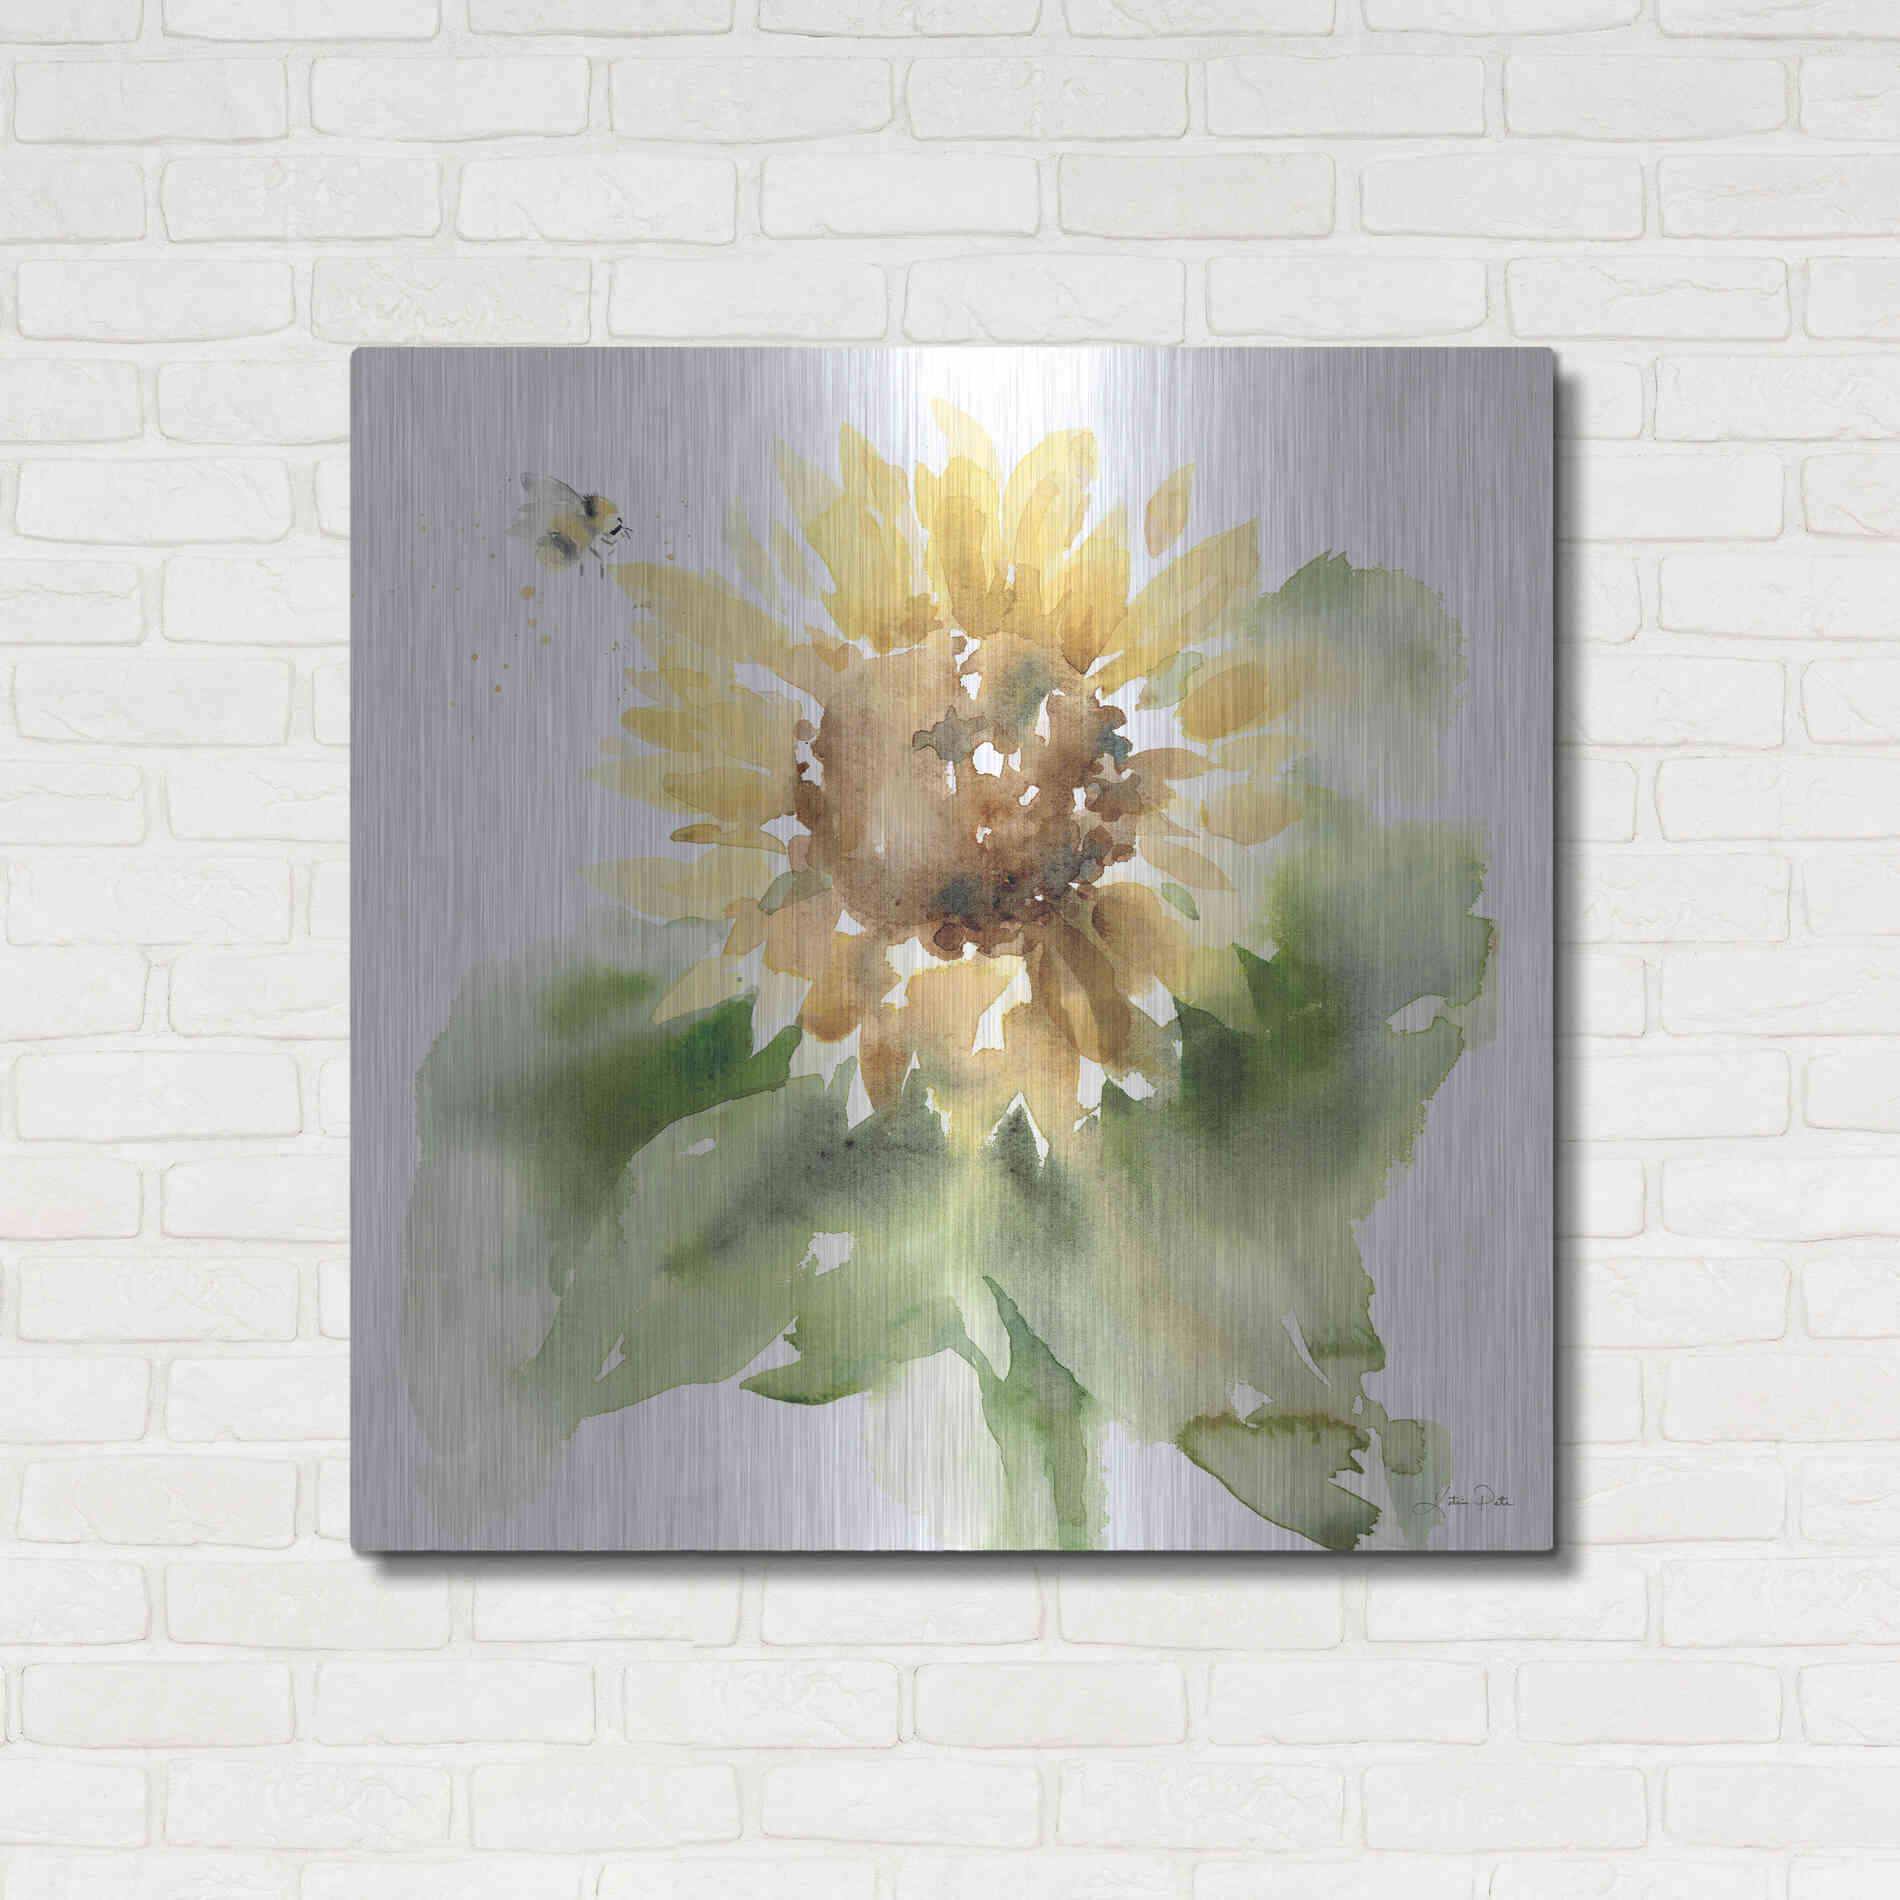 Luxe Metal Art 'Sunflower Meadow III' by Katrina Pete, Metal Wall Art,36x36